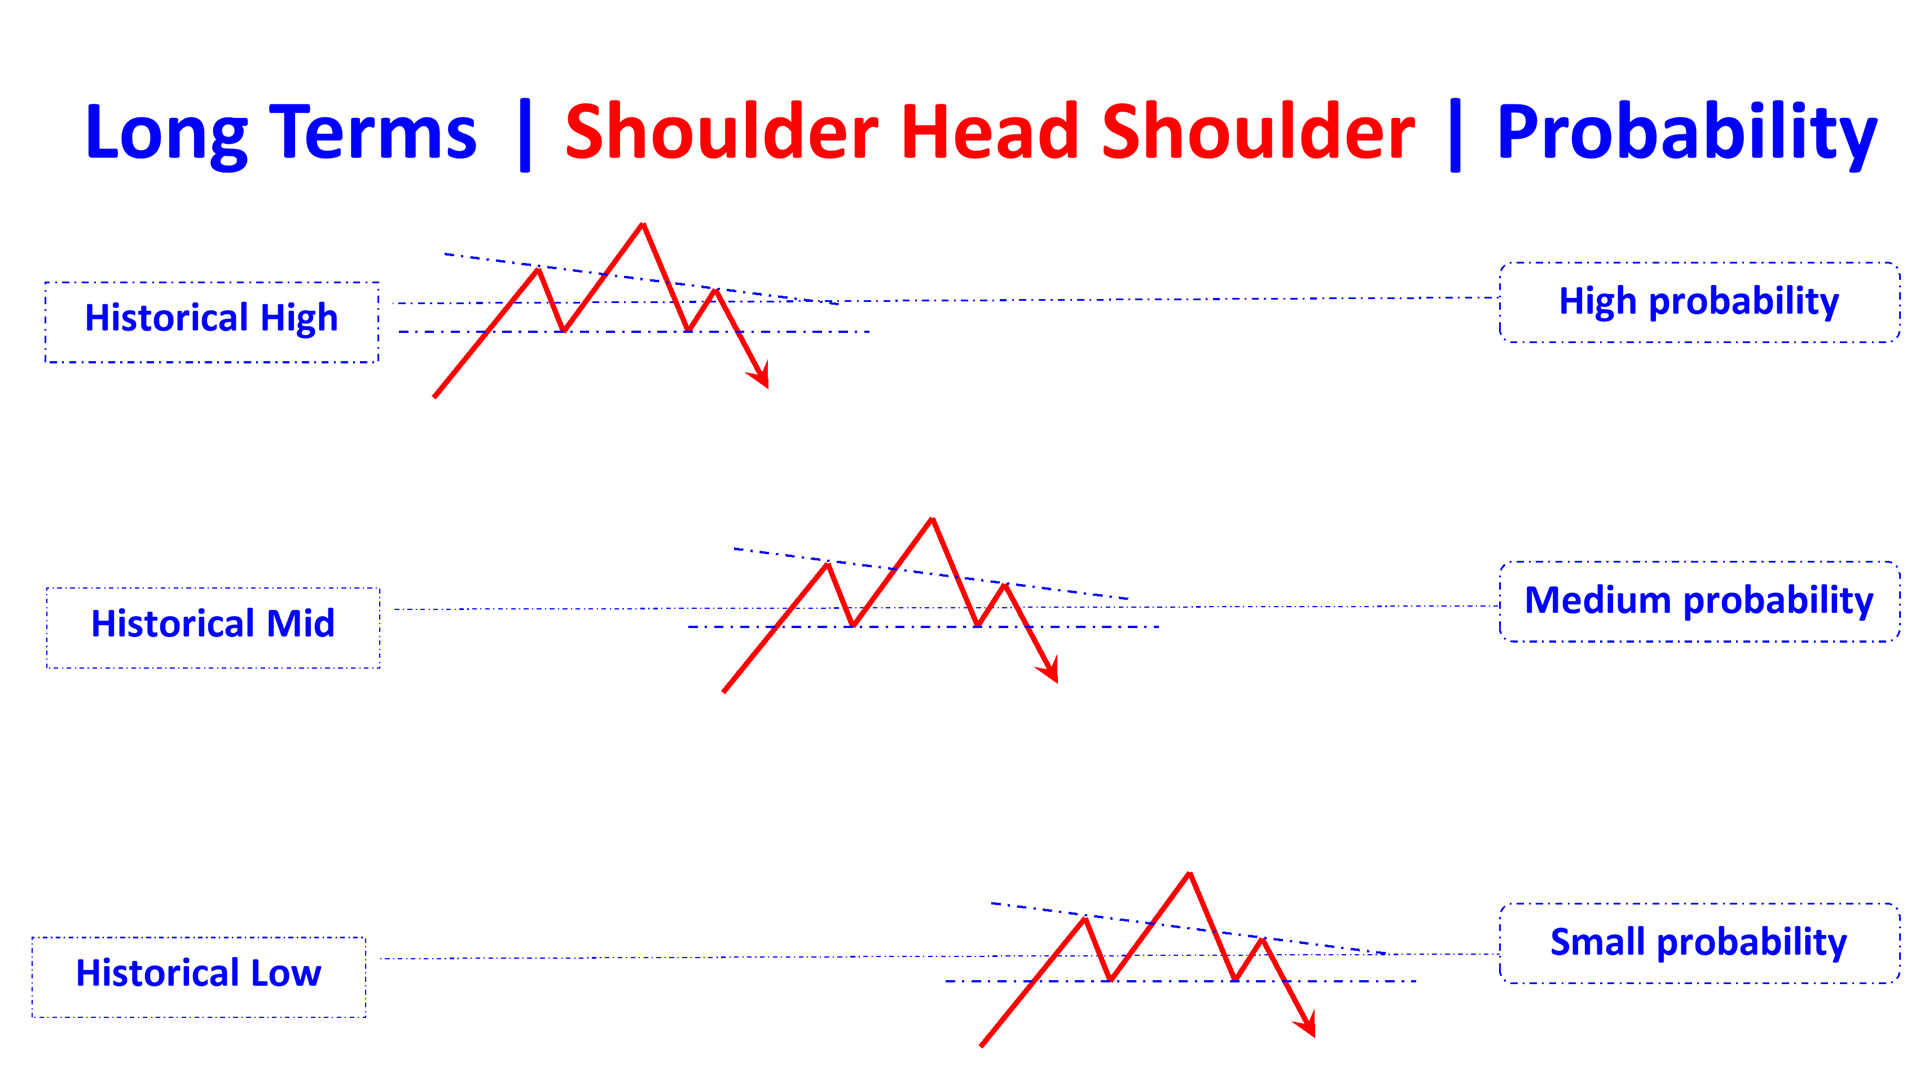 shoulder head shoulder falling en